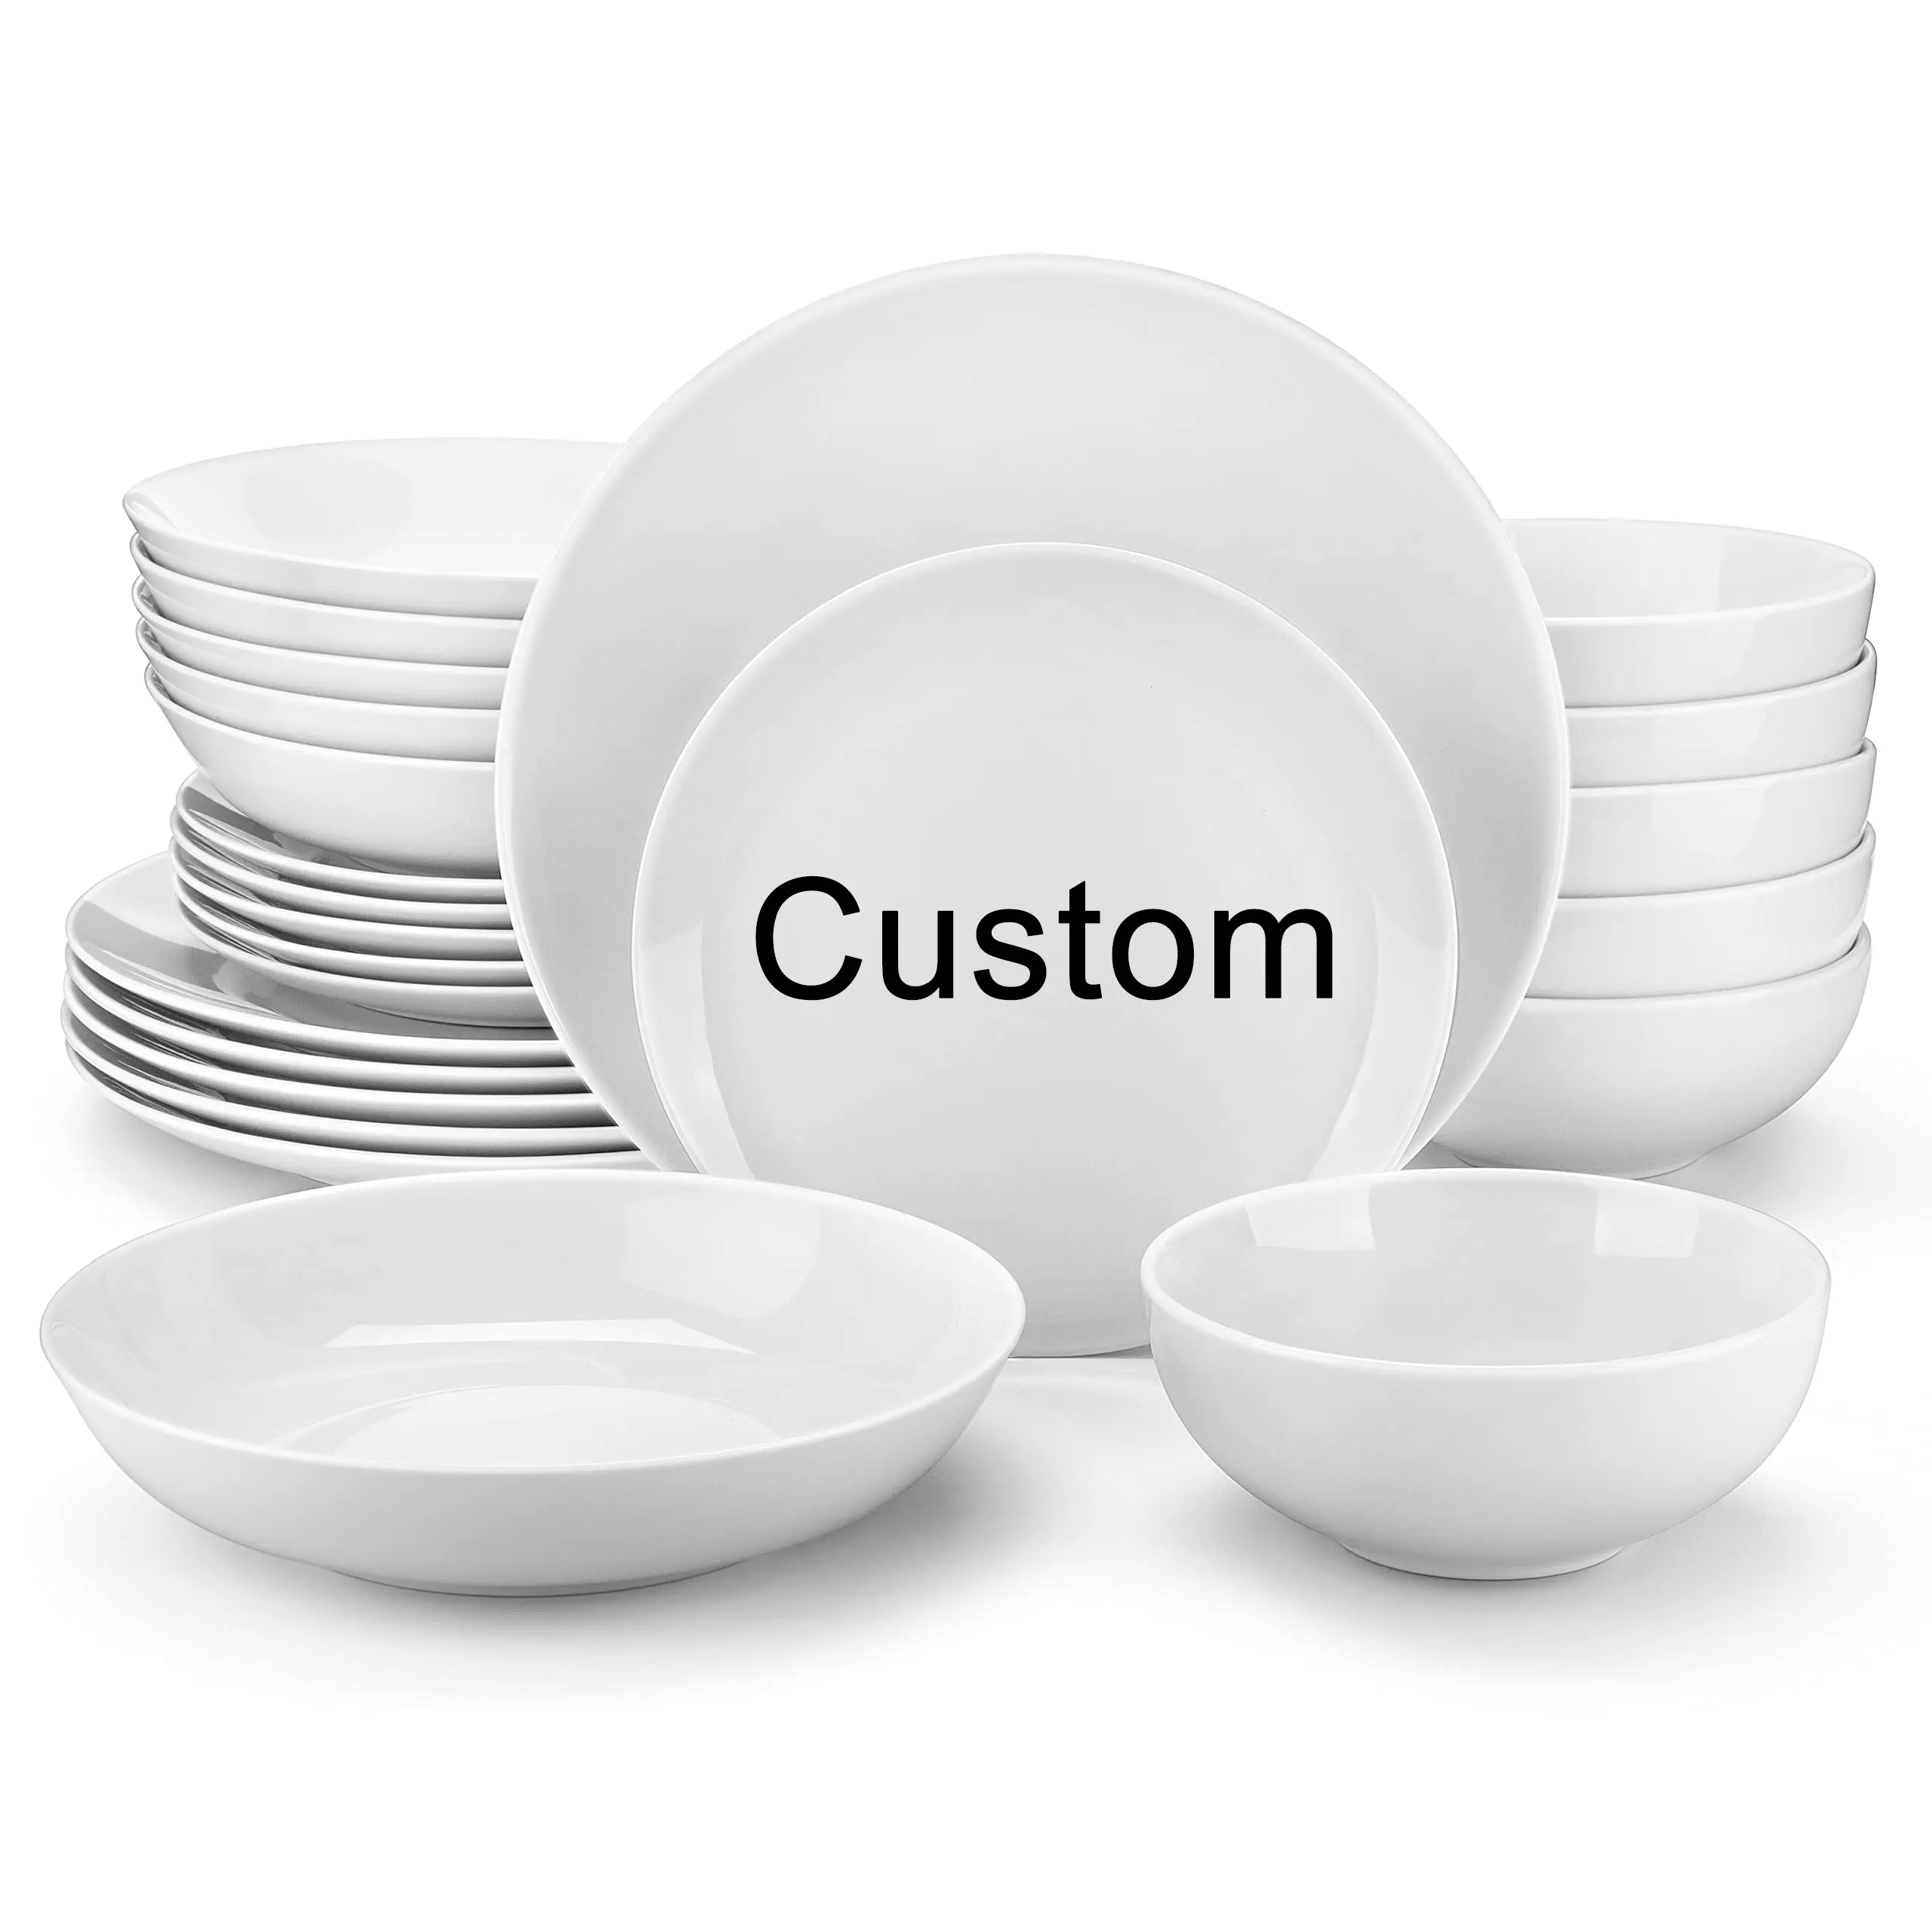 Benutzer definierte anpassbare Restaurant Logo weiß Porzellan Geschirr Teller Set runde Gerichte können Plato Keramik platten für Restaurants